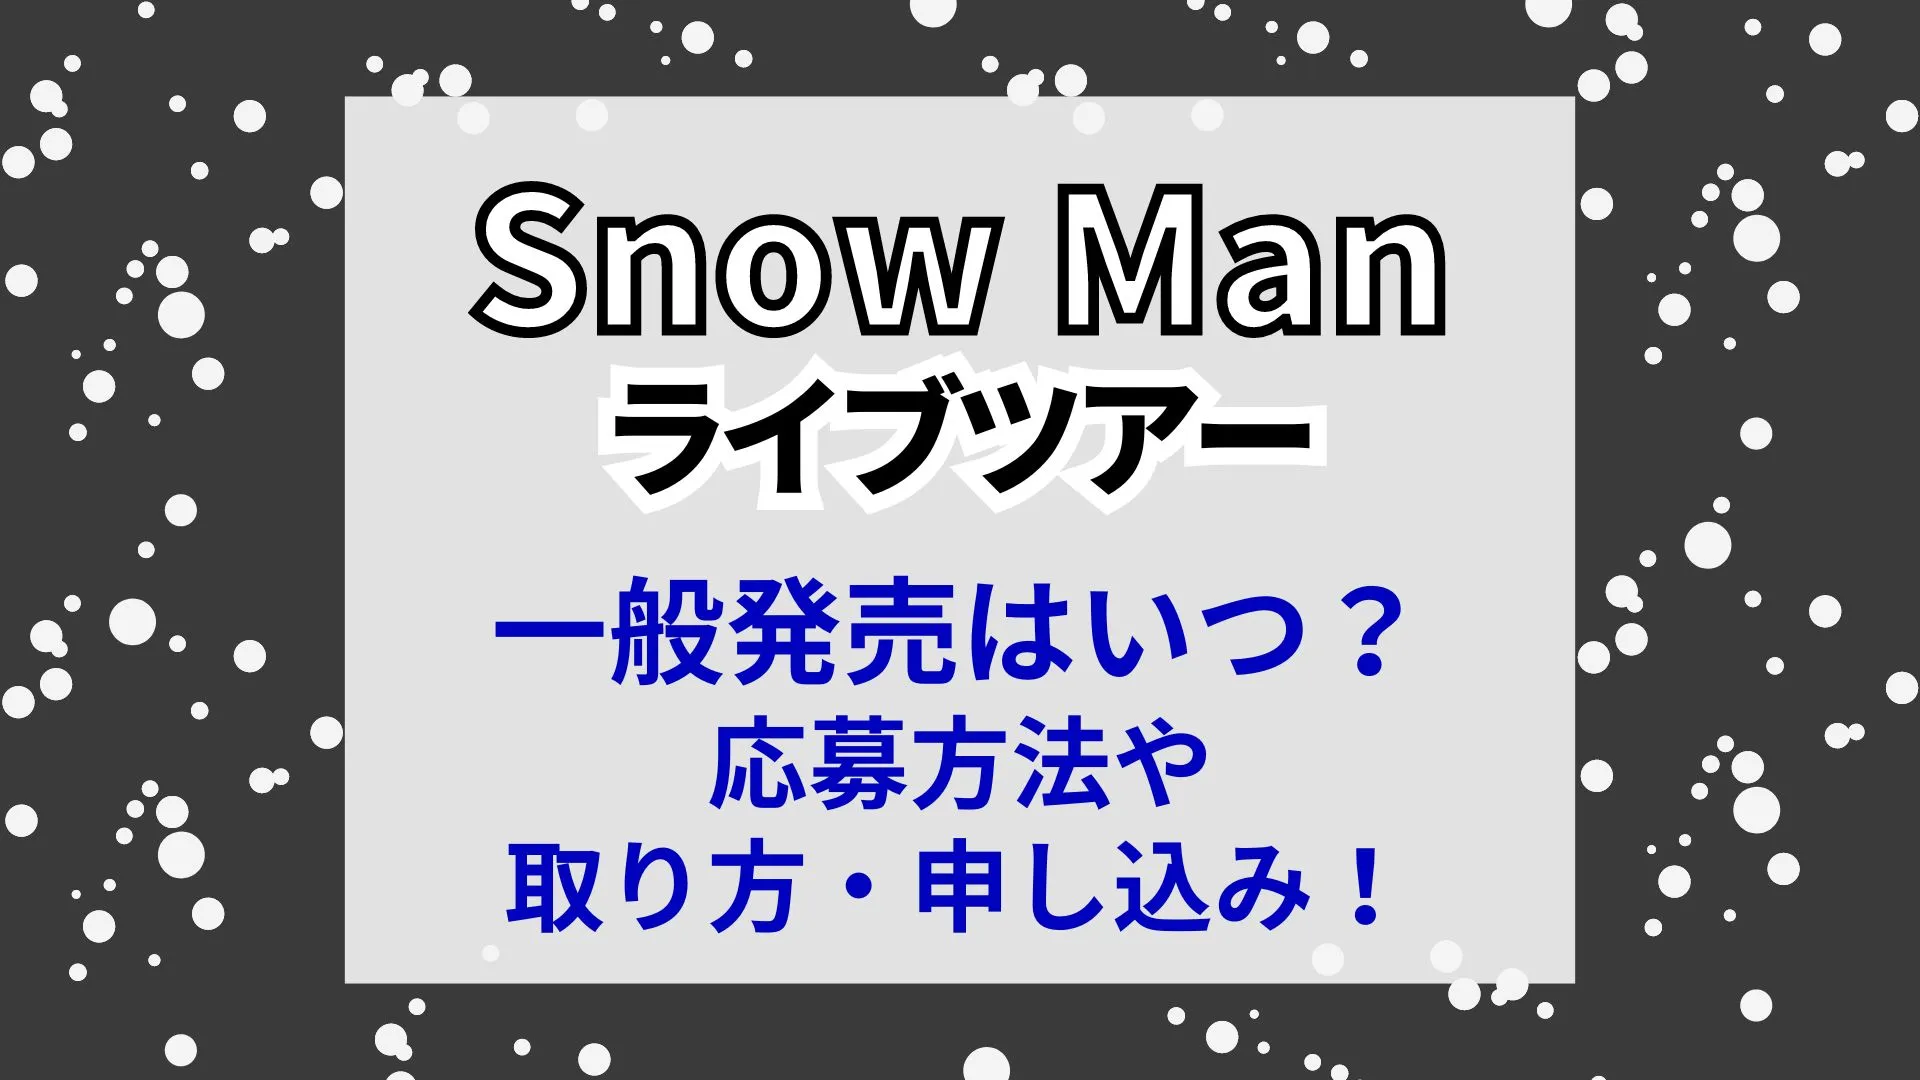 Snow Manライブツアーのチケット一般販売